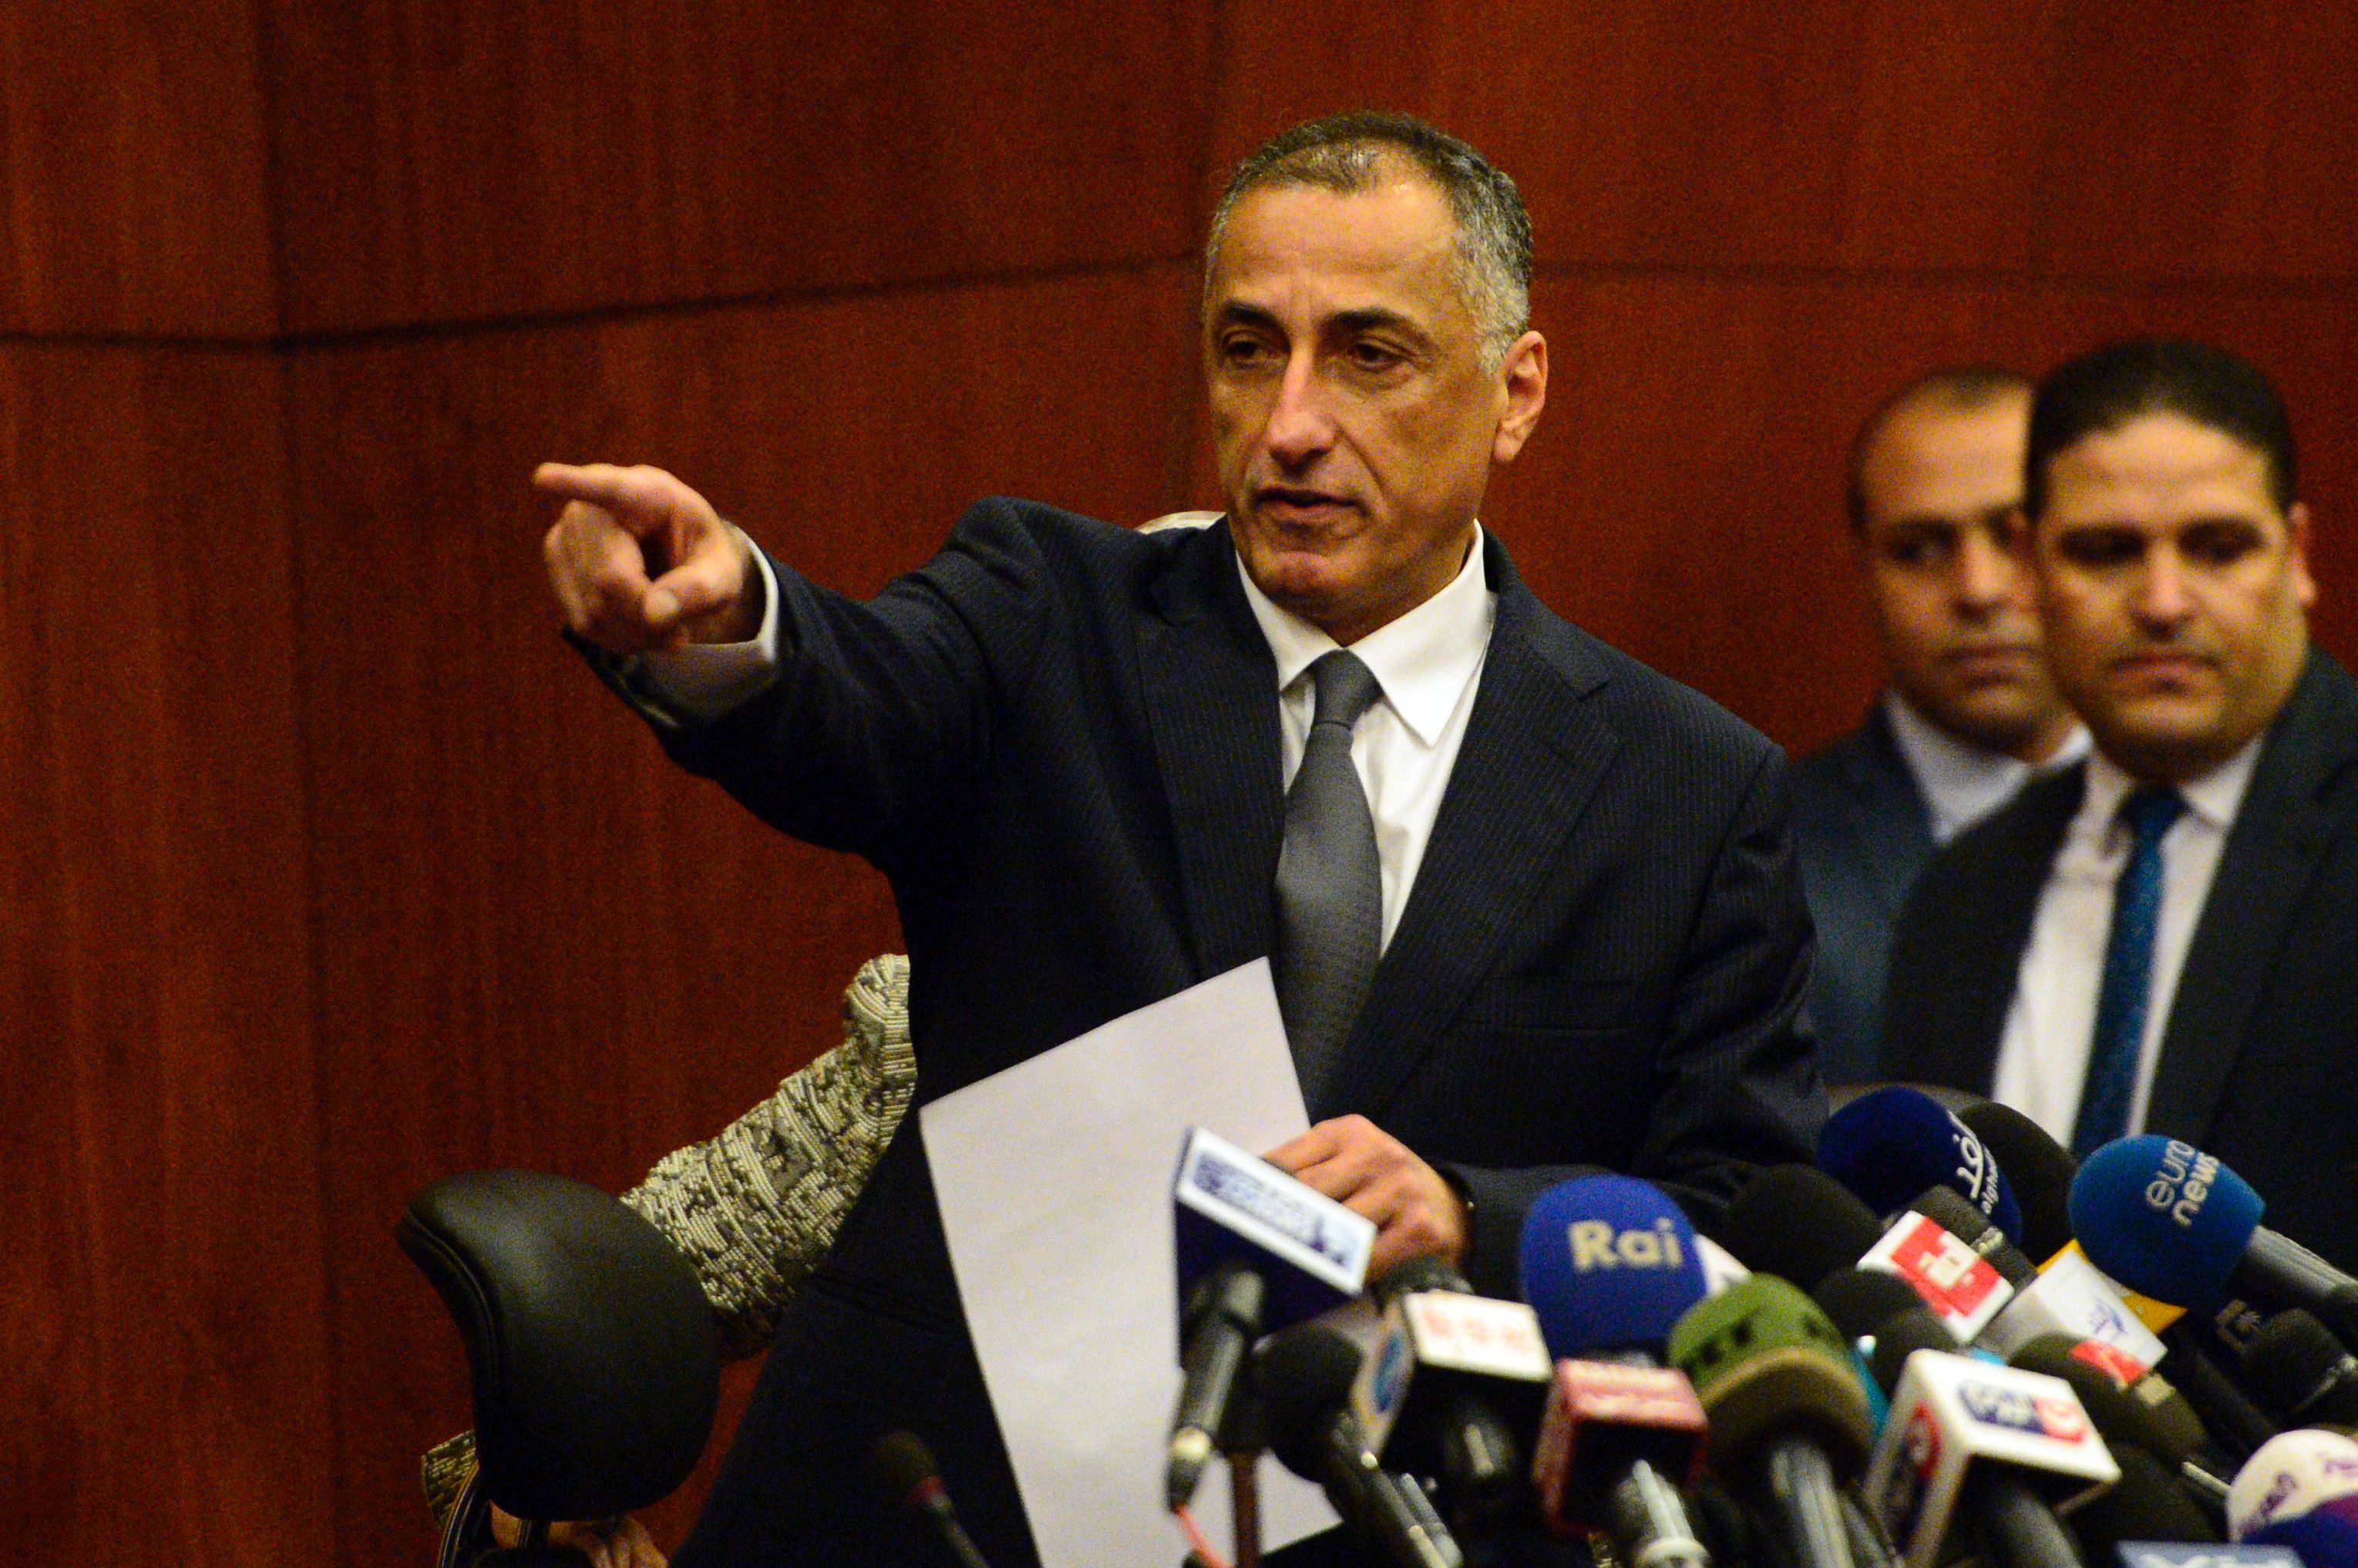 طارق عامر، محافظ البنك المركزي المصري، يتحدث خلال مؤتمر صحفي في القاهرة يوم 3 نوفمبر/ تشرين ثاني 2016 (أ.ف.ب)